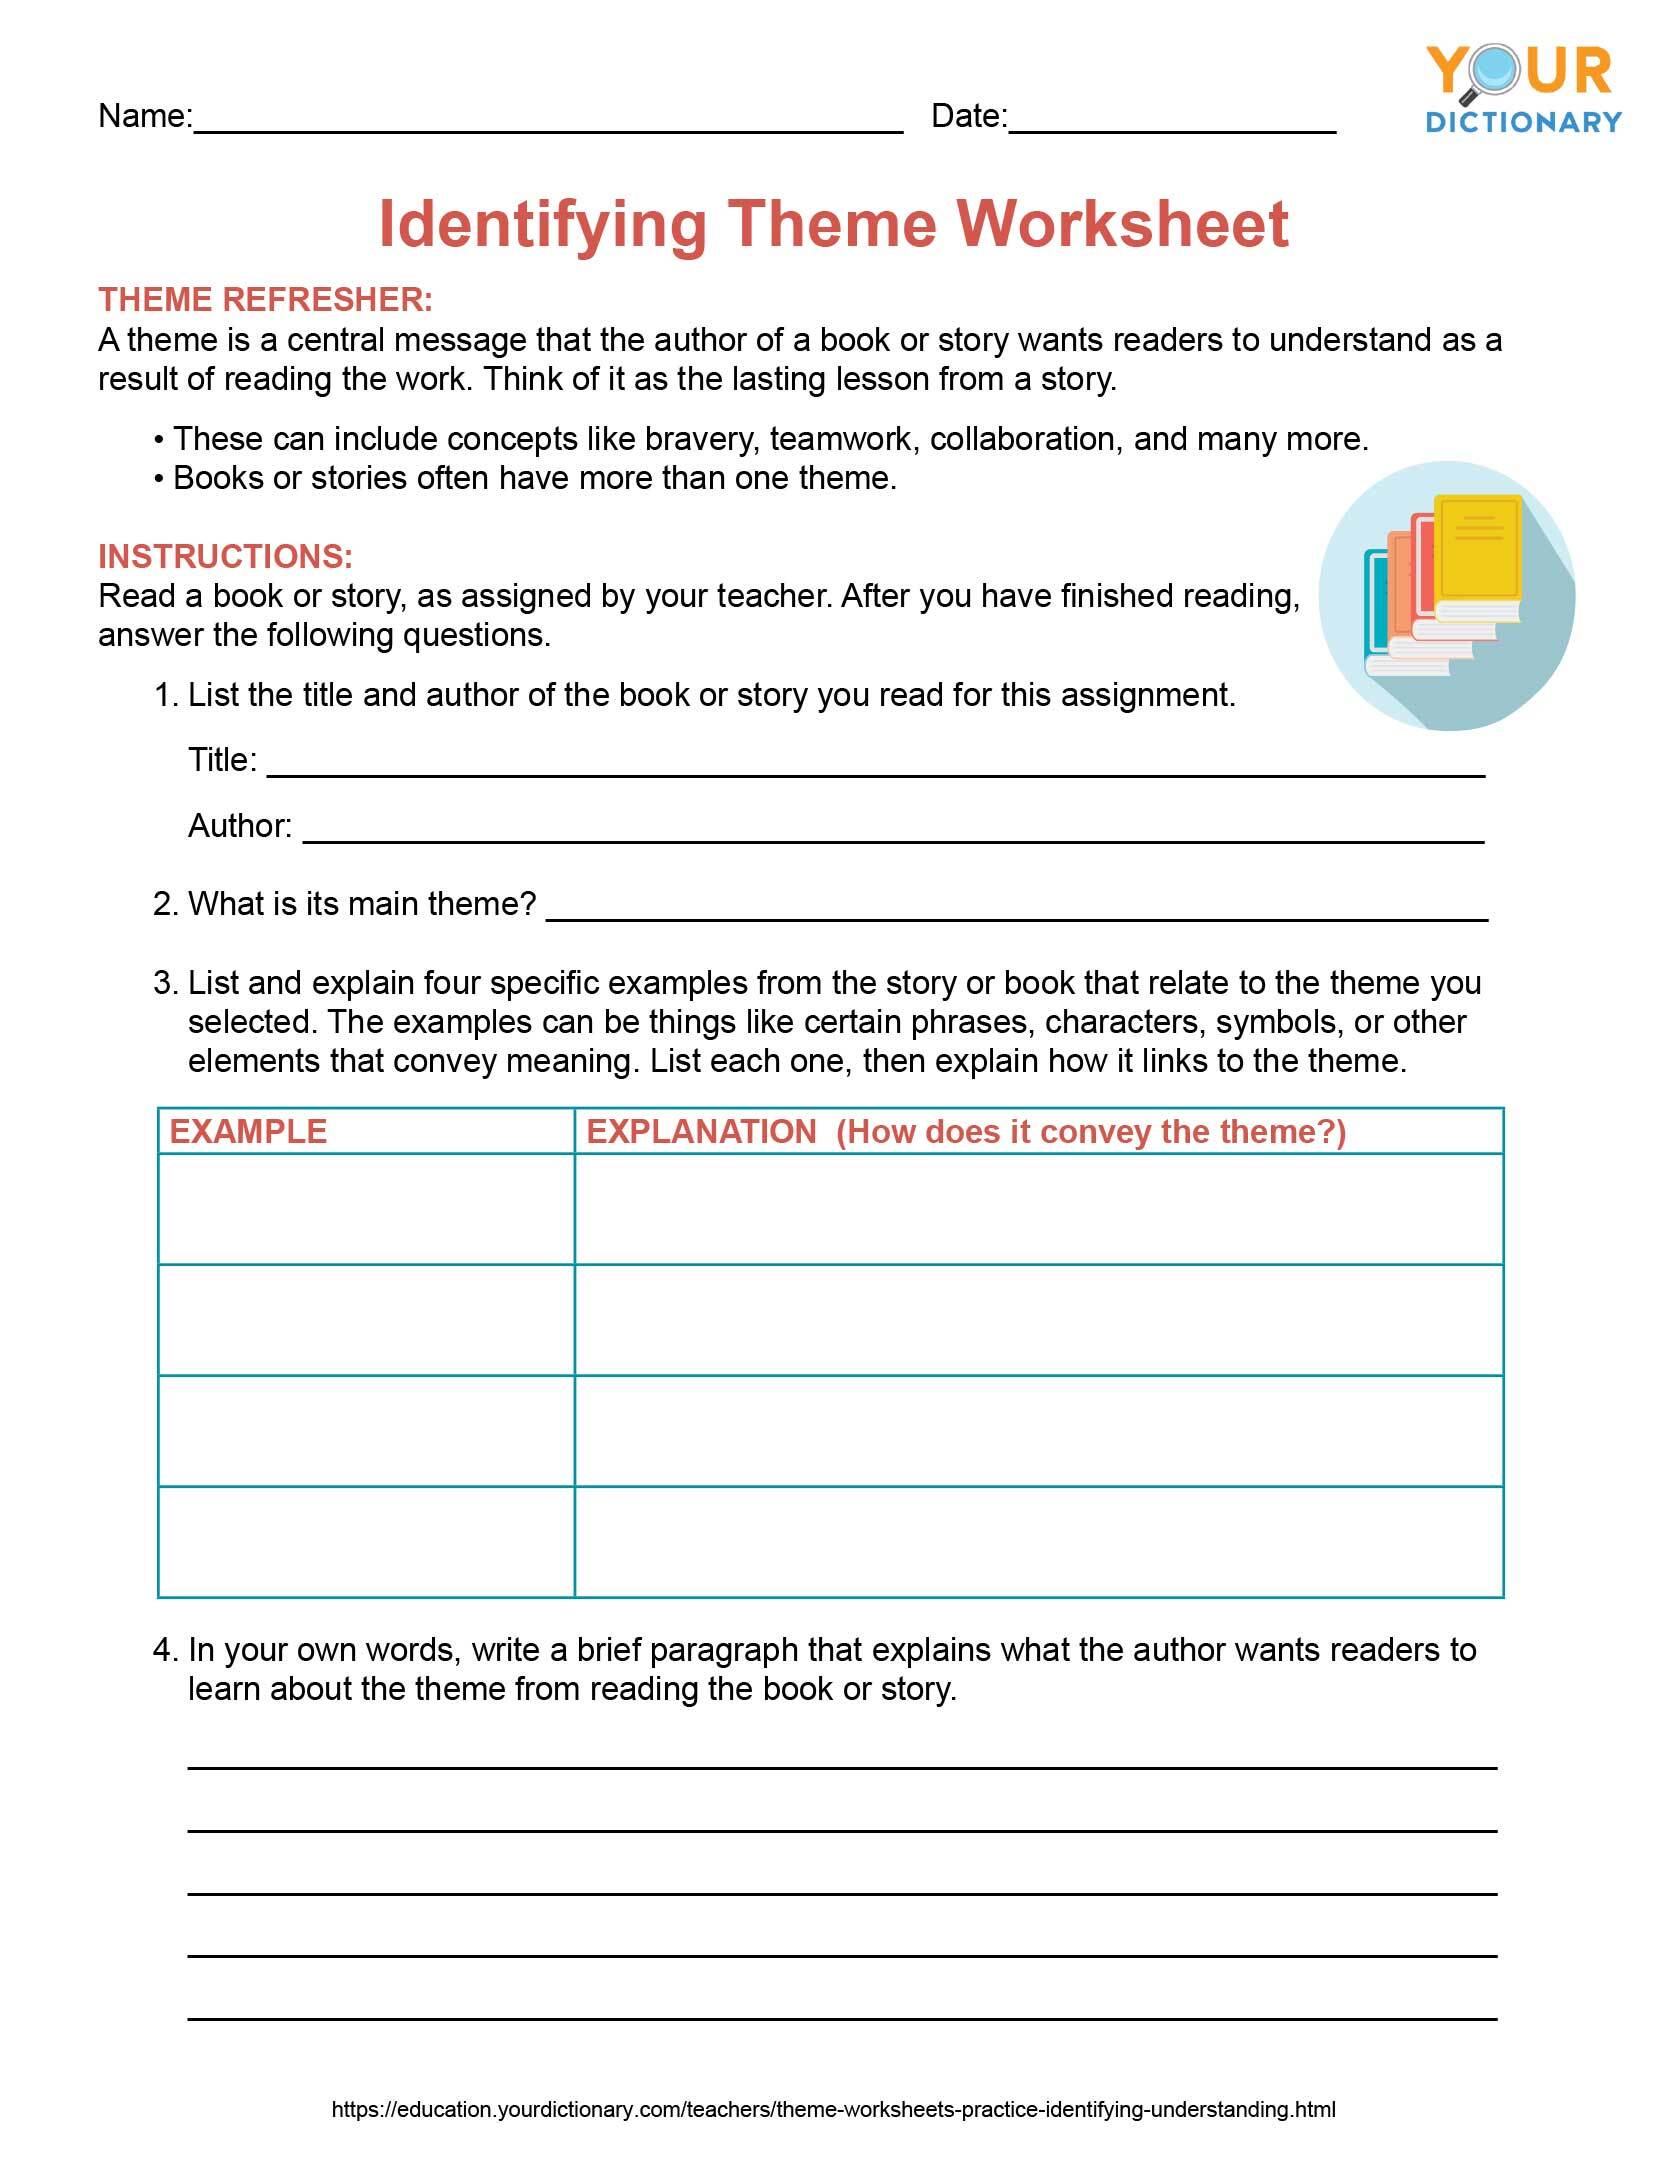 identifying theme worksheet printable pdf